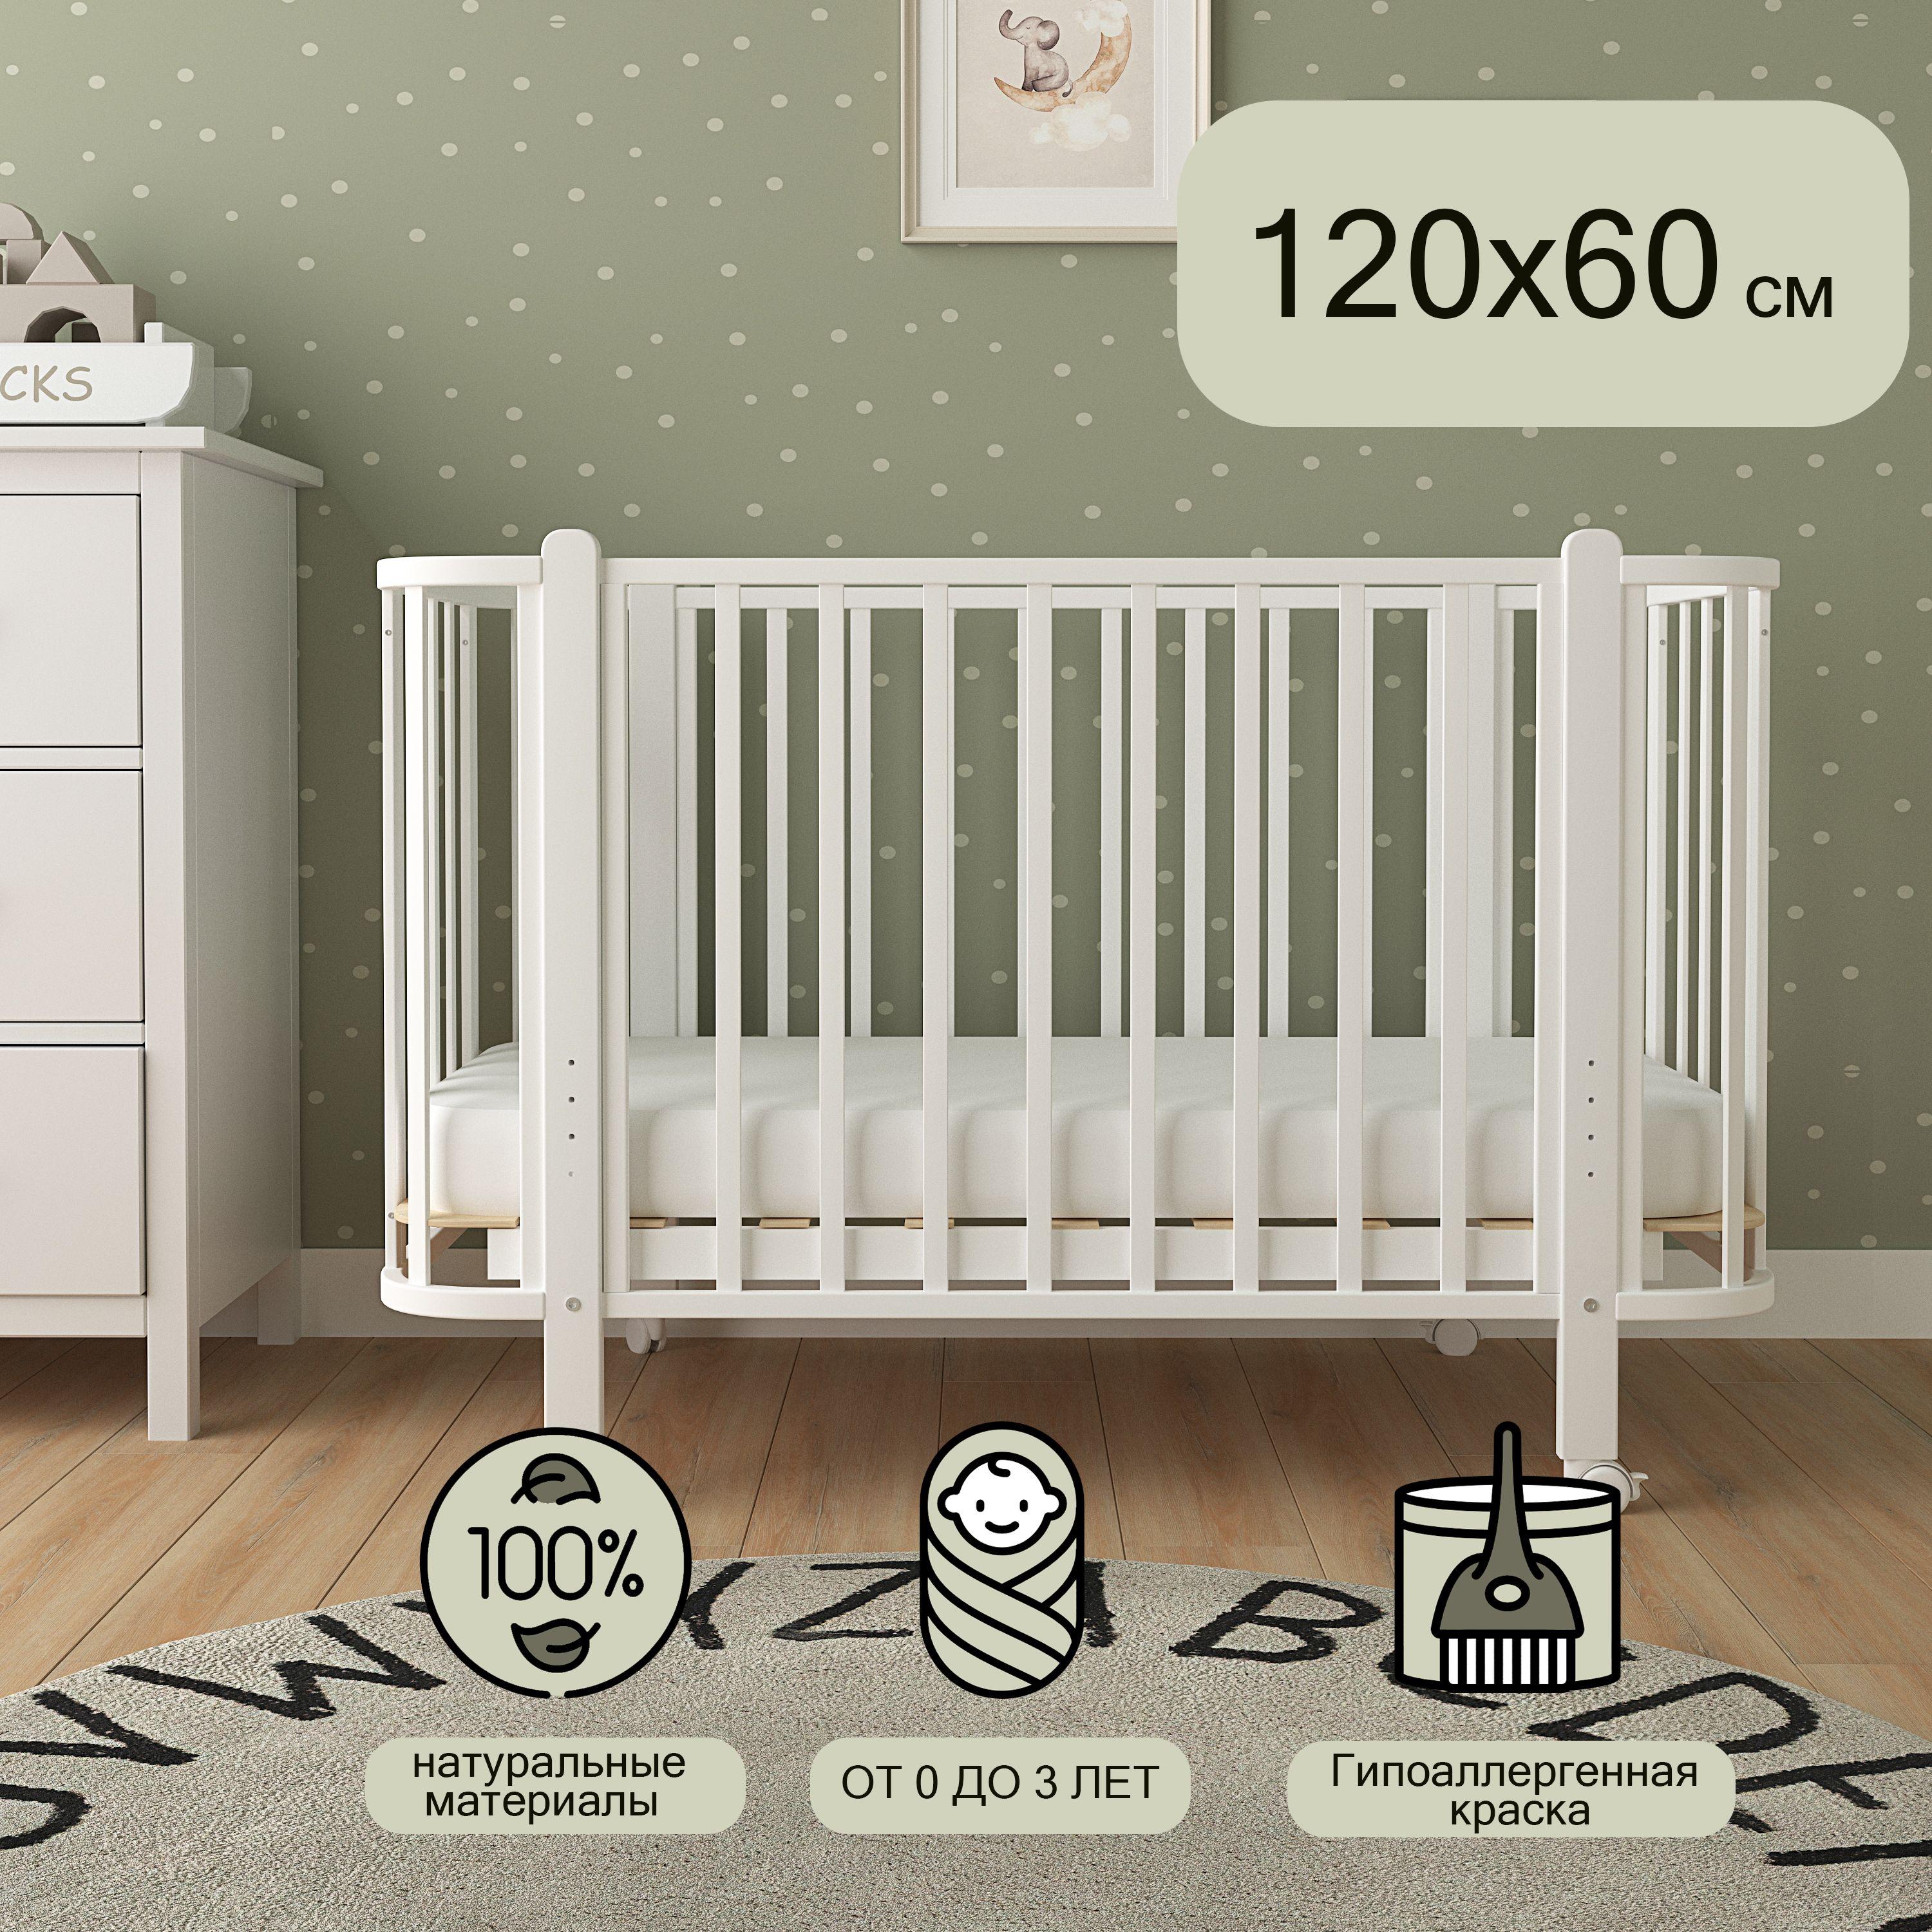 ОПТИПРОМ-А | Детская кроватка для новорожденного, Мультик, 120х60, Белый